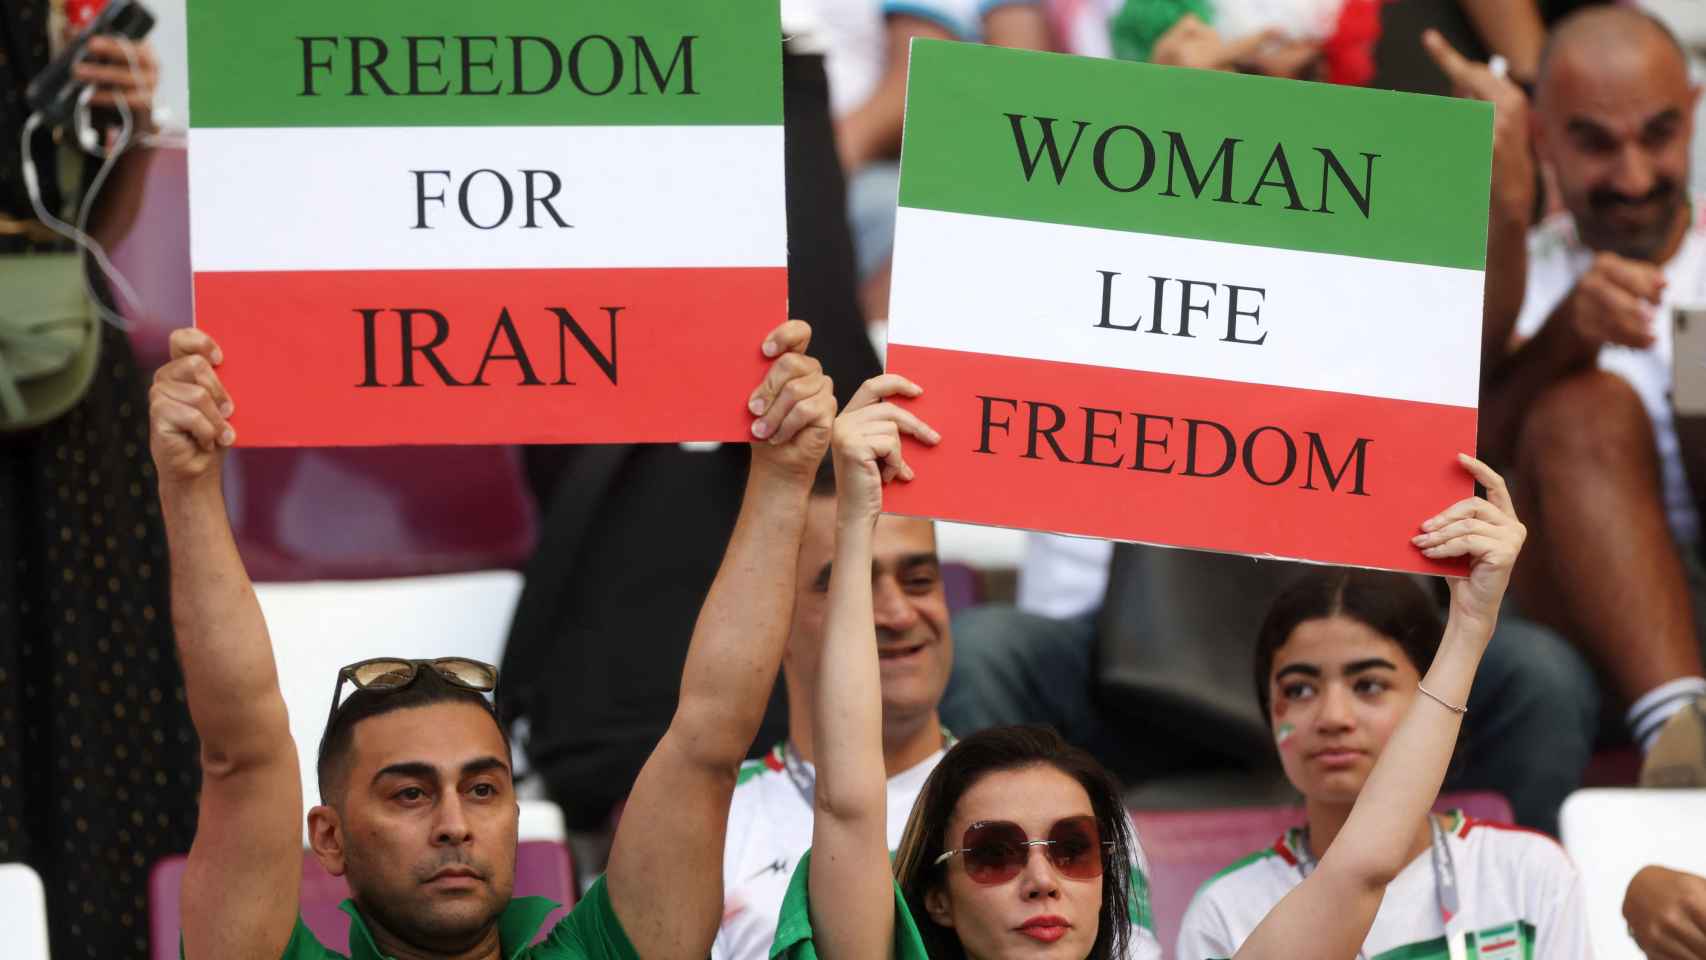 Las protestas de las mujeres iraníes se cuelan en el Mundial de Qatar: “Women life freedom”